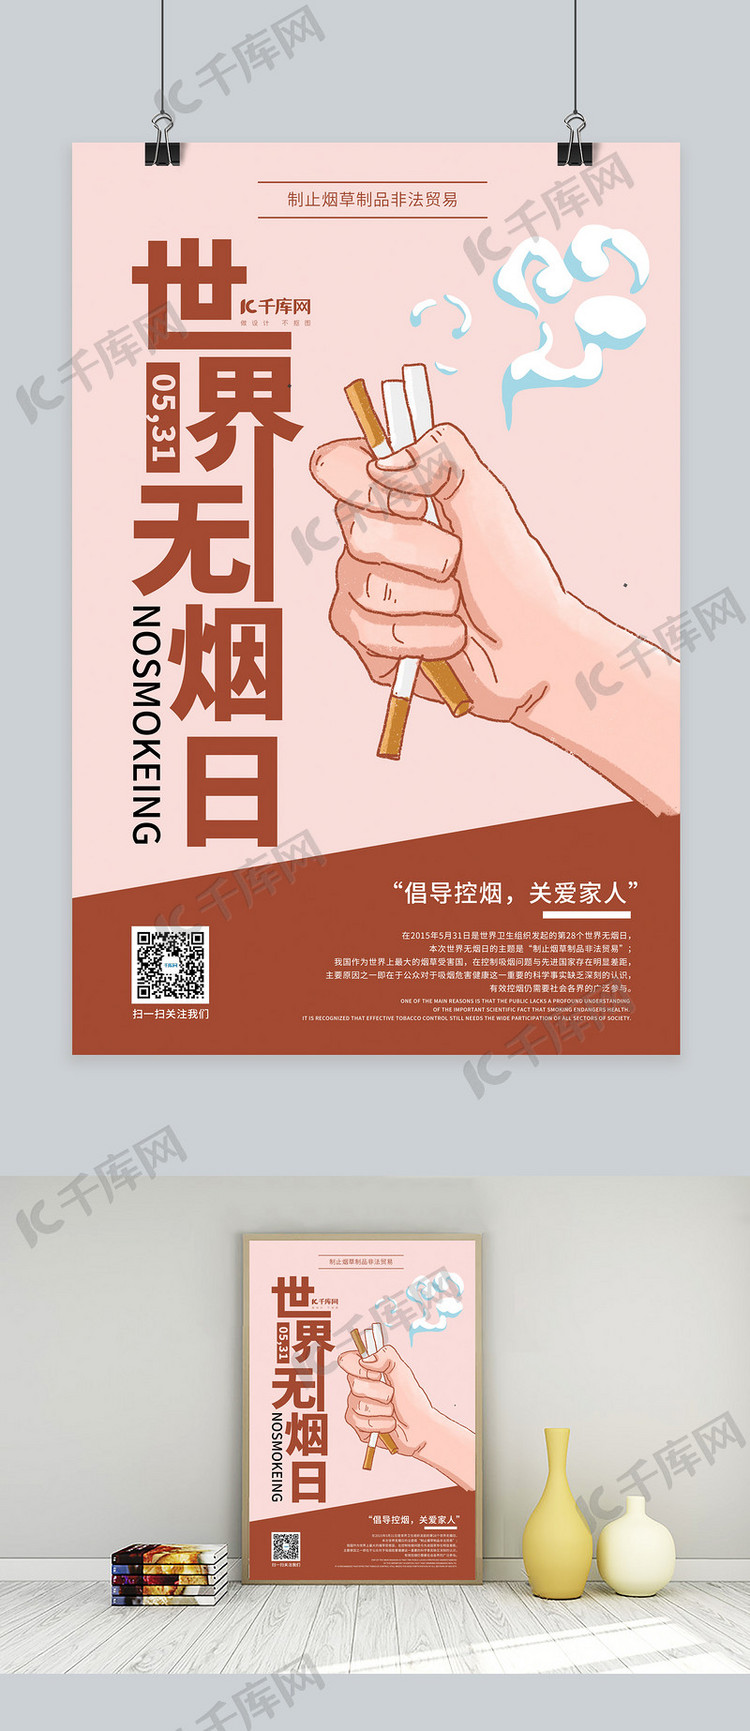 世界无烟日节日活动海报